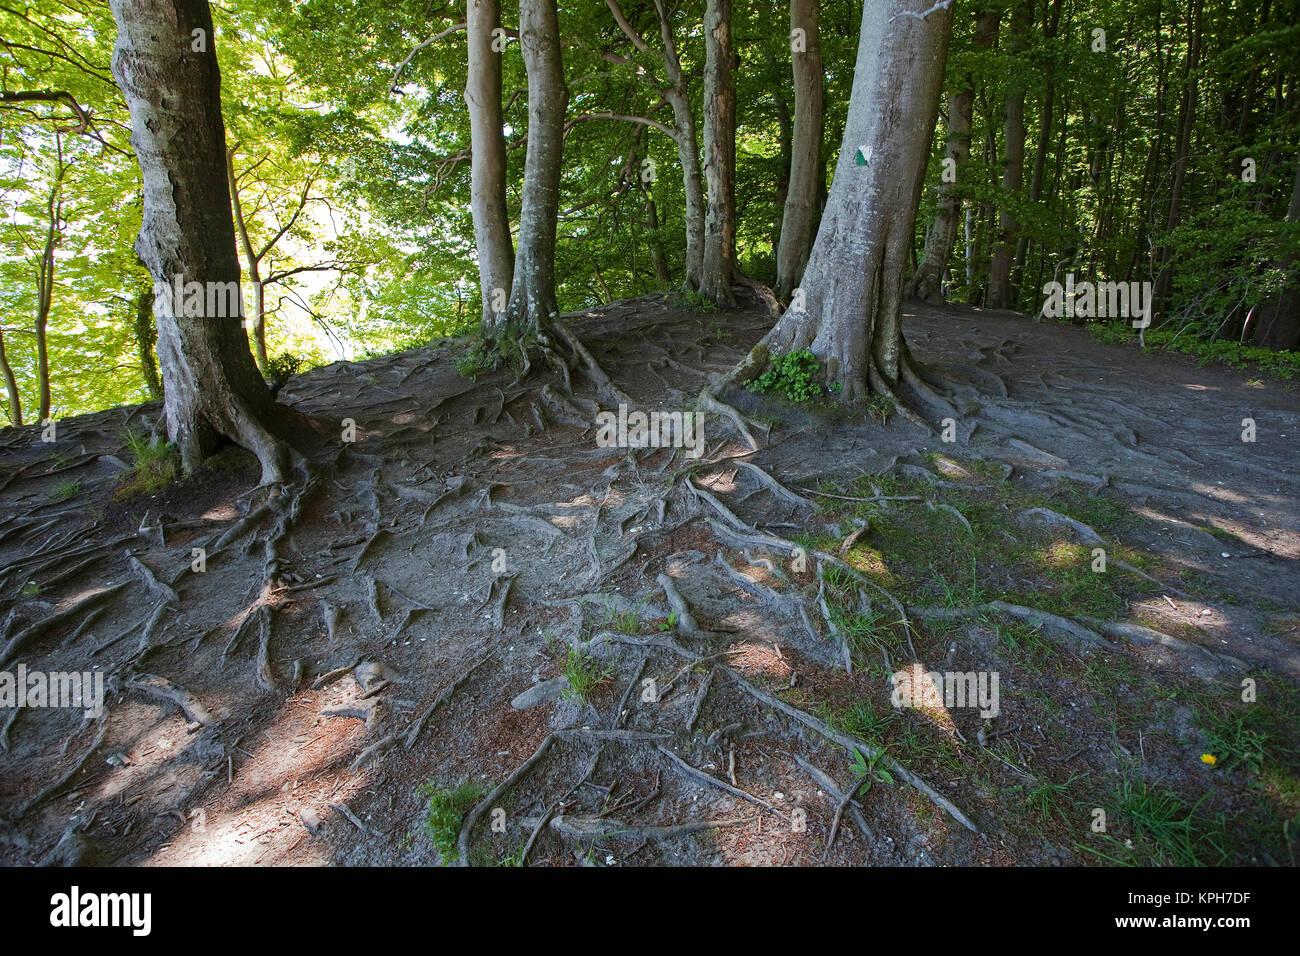 Las raíces de las hayas, bosque en el Parque Nacional Jasmund, Ruegen isla, Mecklemburgo-Pomerania Occidental, Mar Báltico, Alemania, Europa Foto de stock